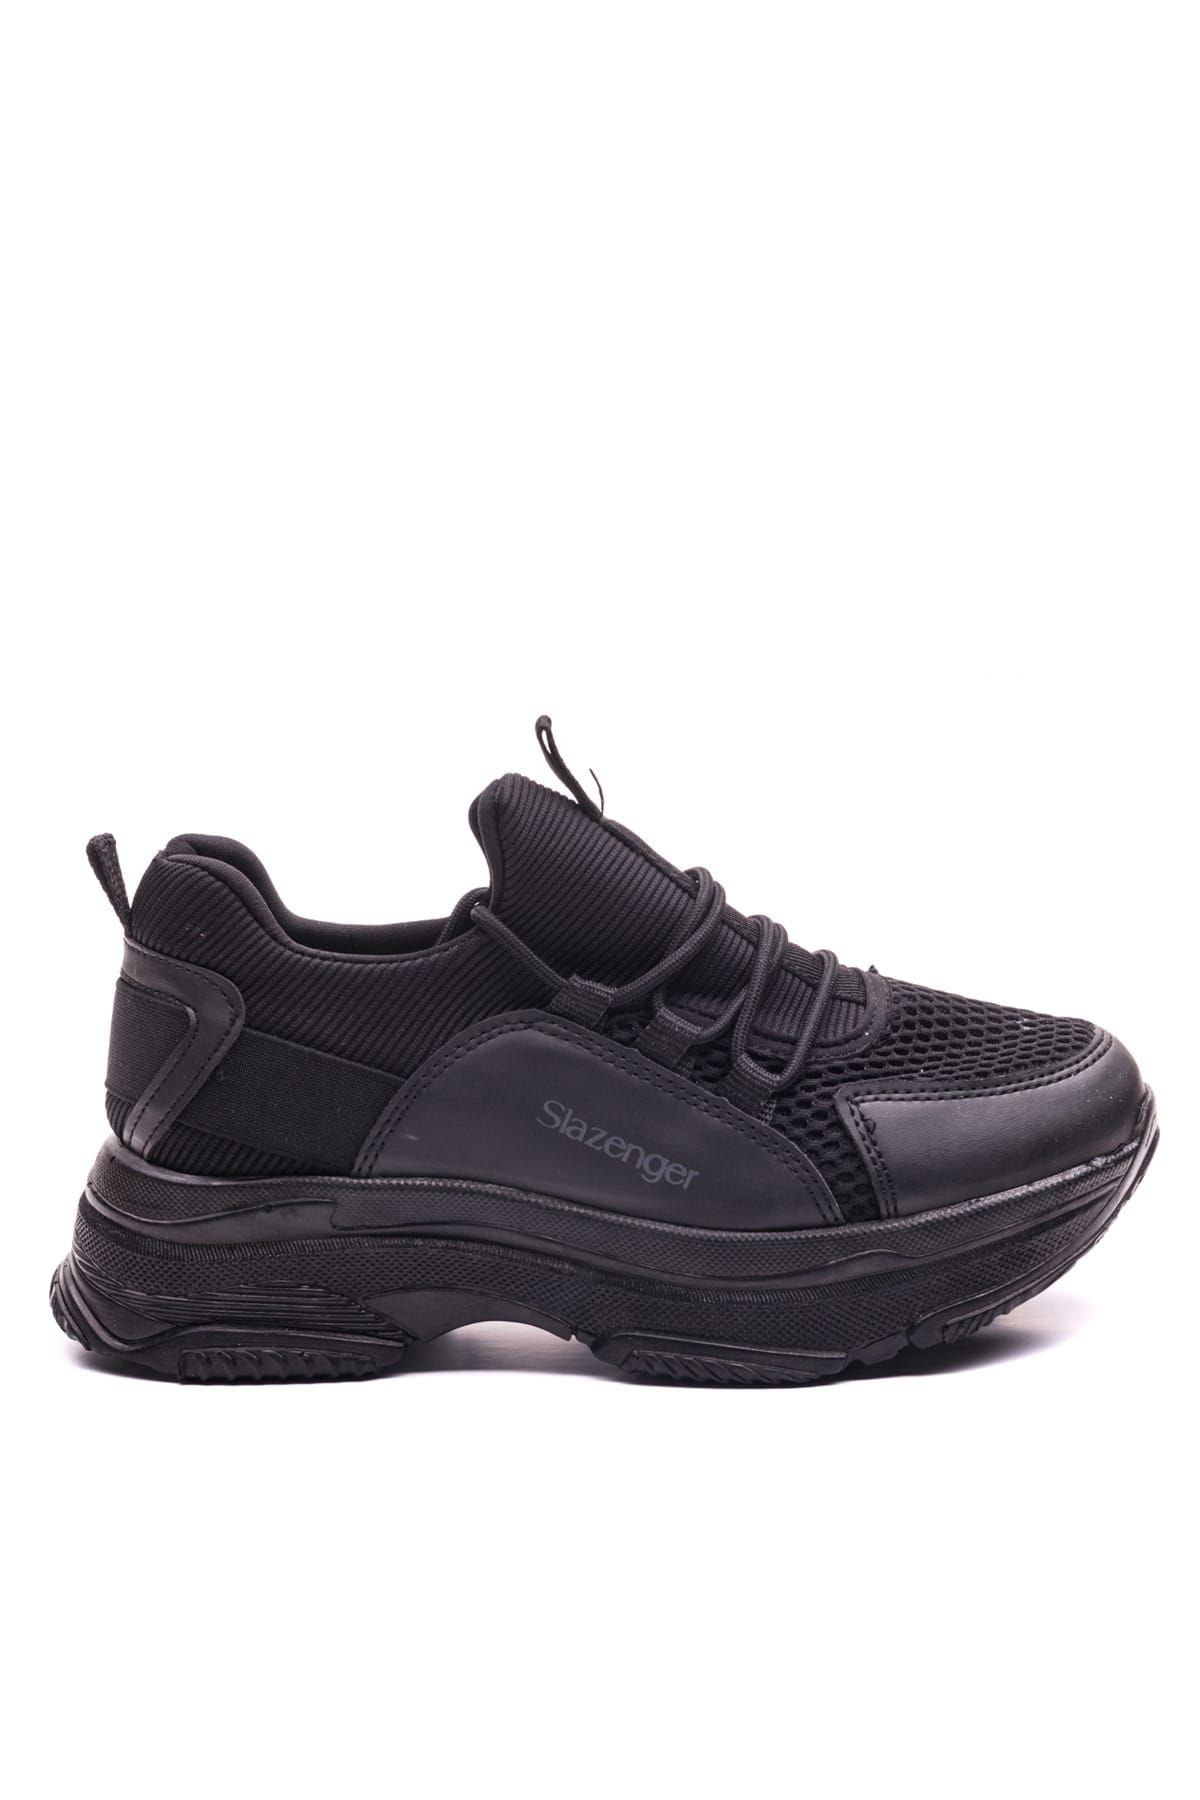 Slazenger Zulu Sneaker Kadın Ayakkabı Siyah / Siyah